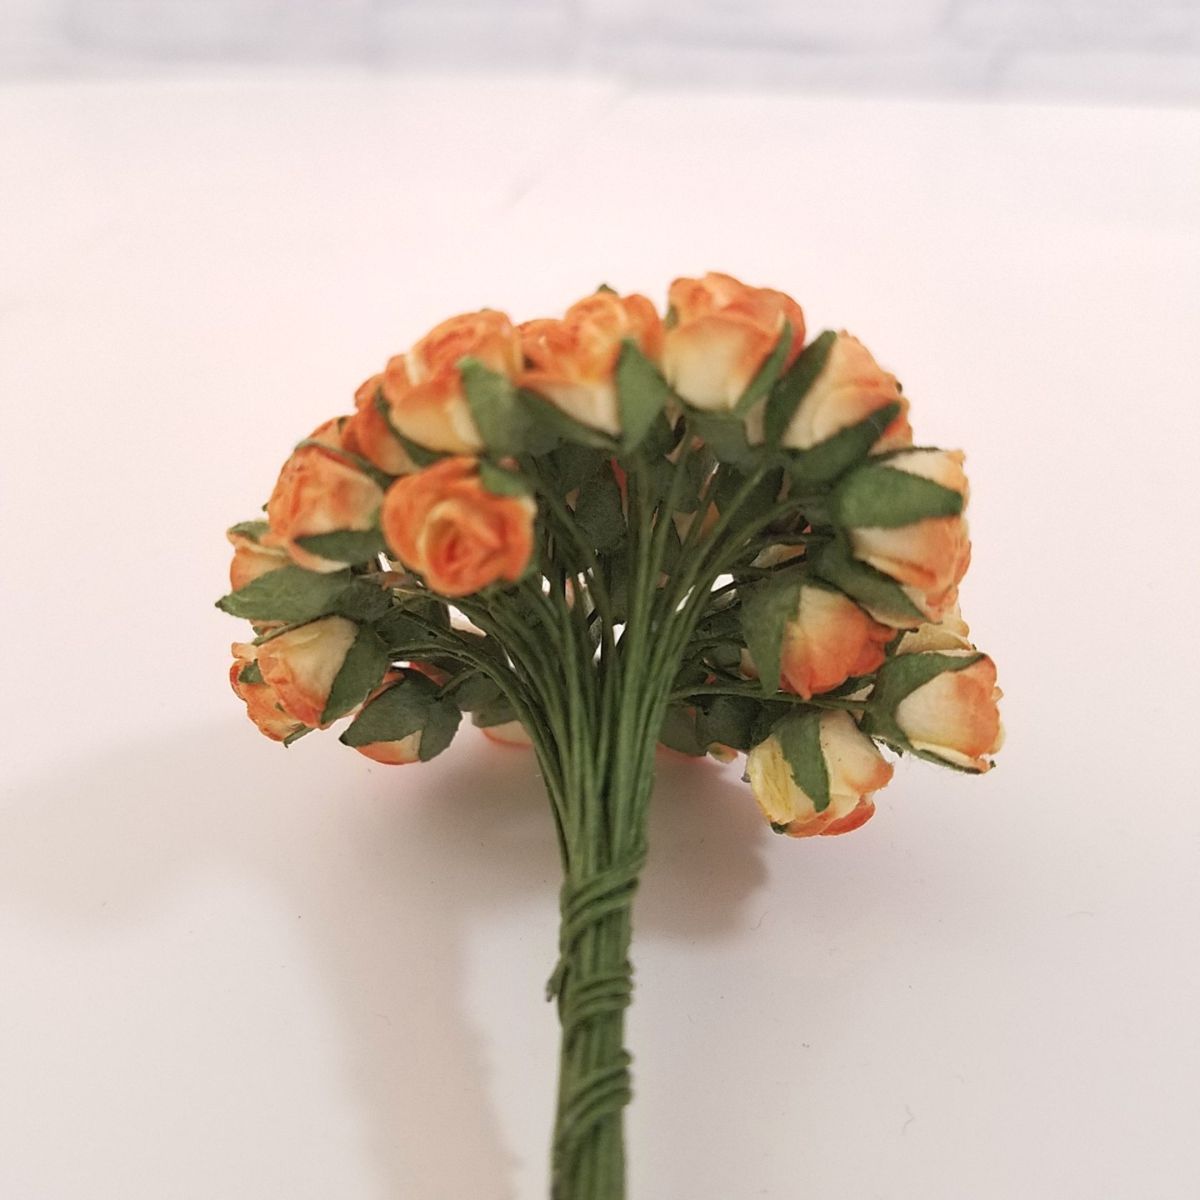  искусственный цветок [ Mini * бумага цветок роза (bai цвет | orange & кремовый цвет ) диаметр примерно 5-8mm 50шт.@] ручная работа lease 